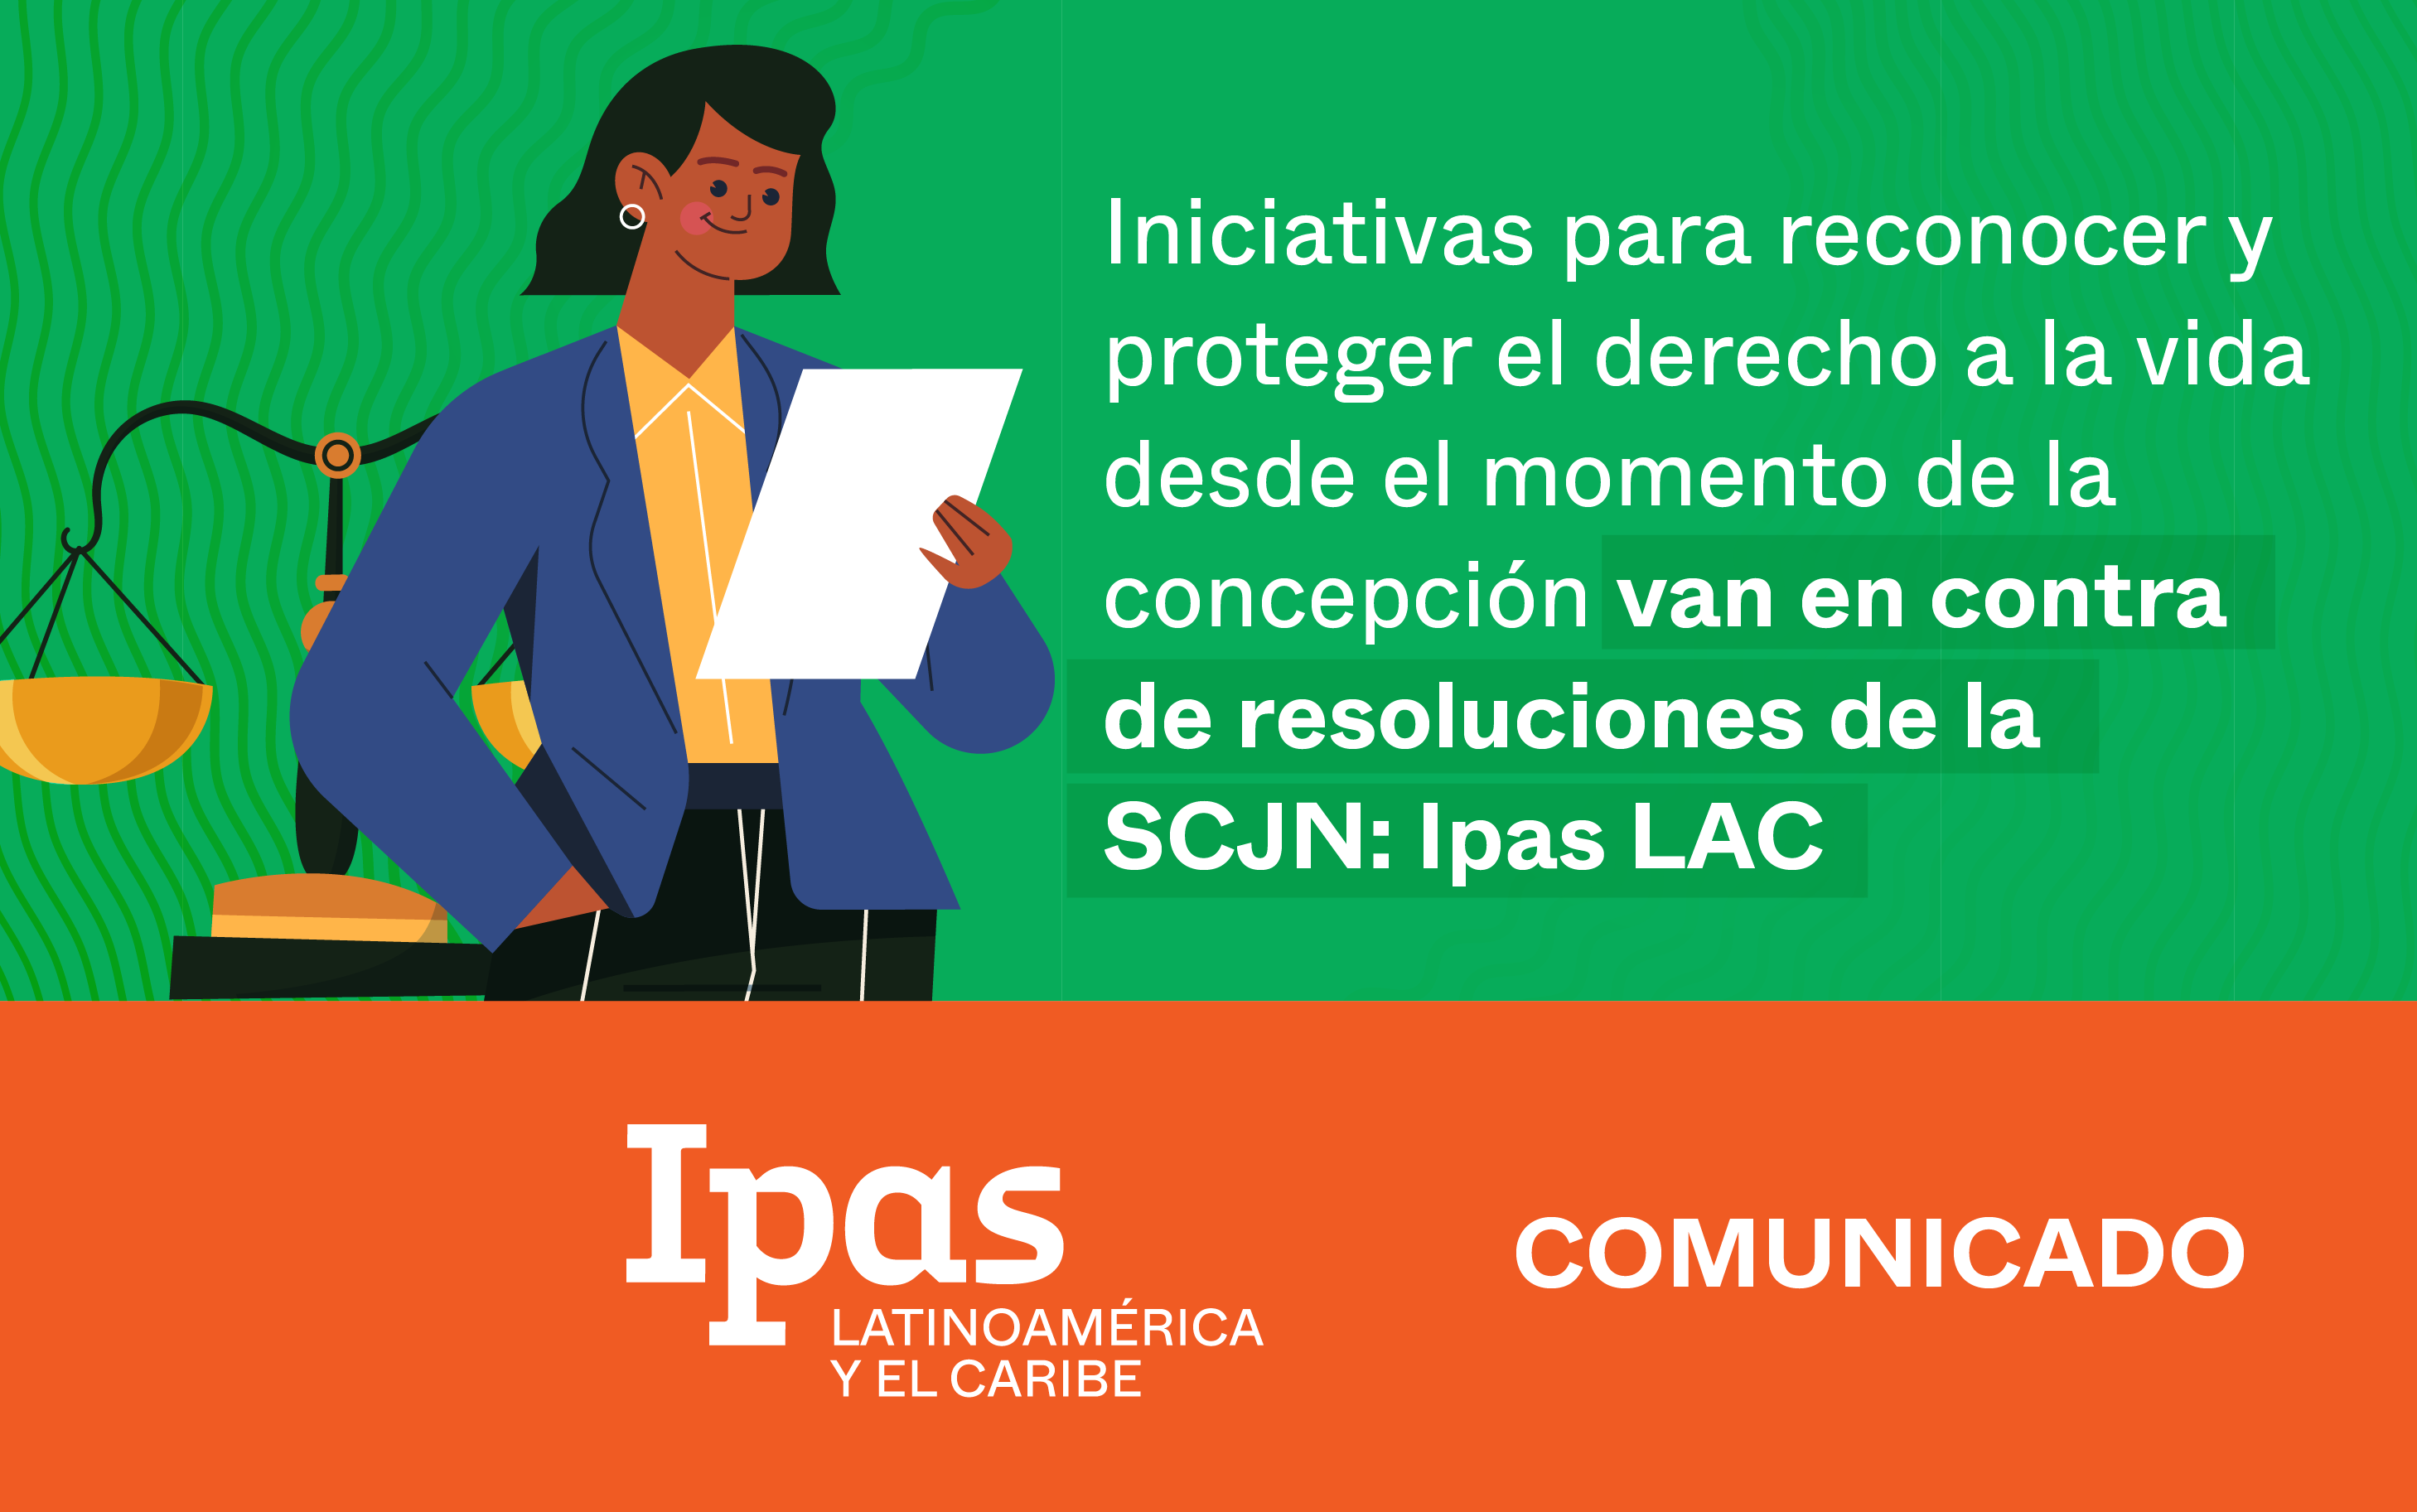 Iniciativas para reconocer y proteger el derecho a la vida desde el momento de la concepción van en contra de resoluciones de la SCJN: Ipas LAC